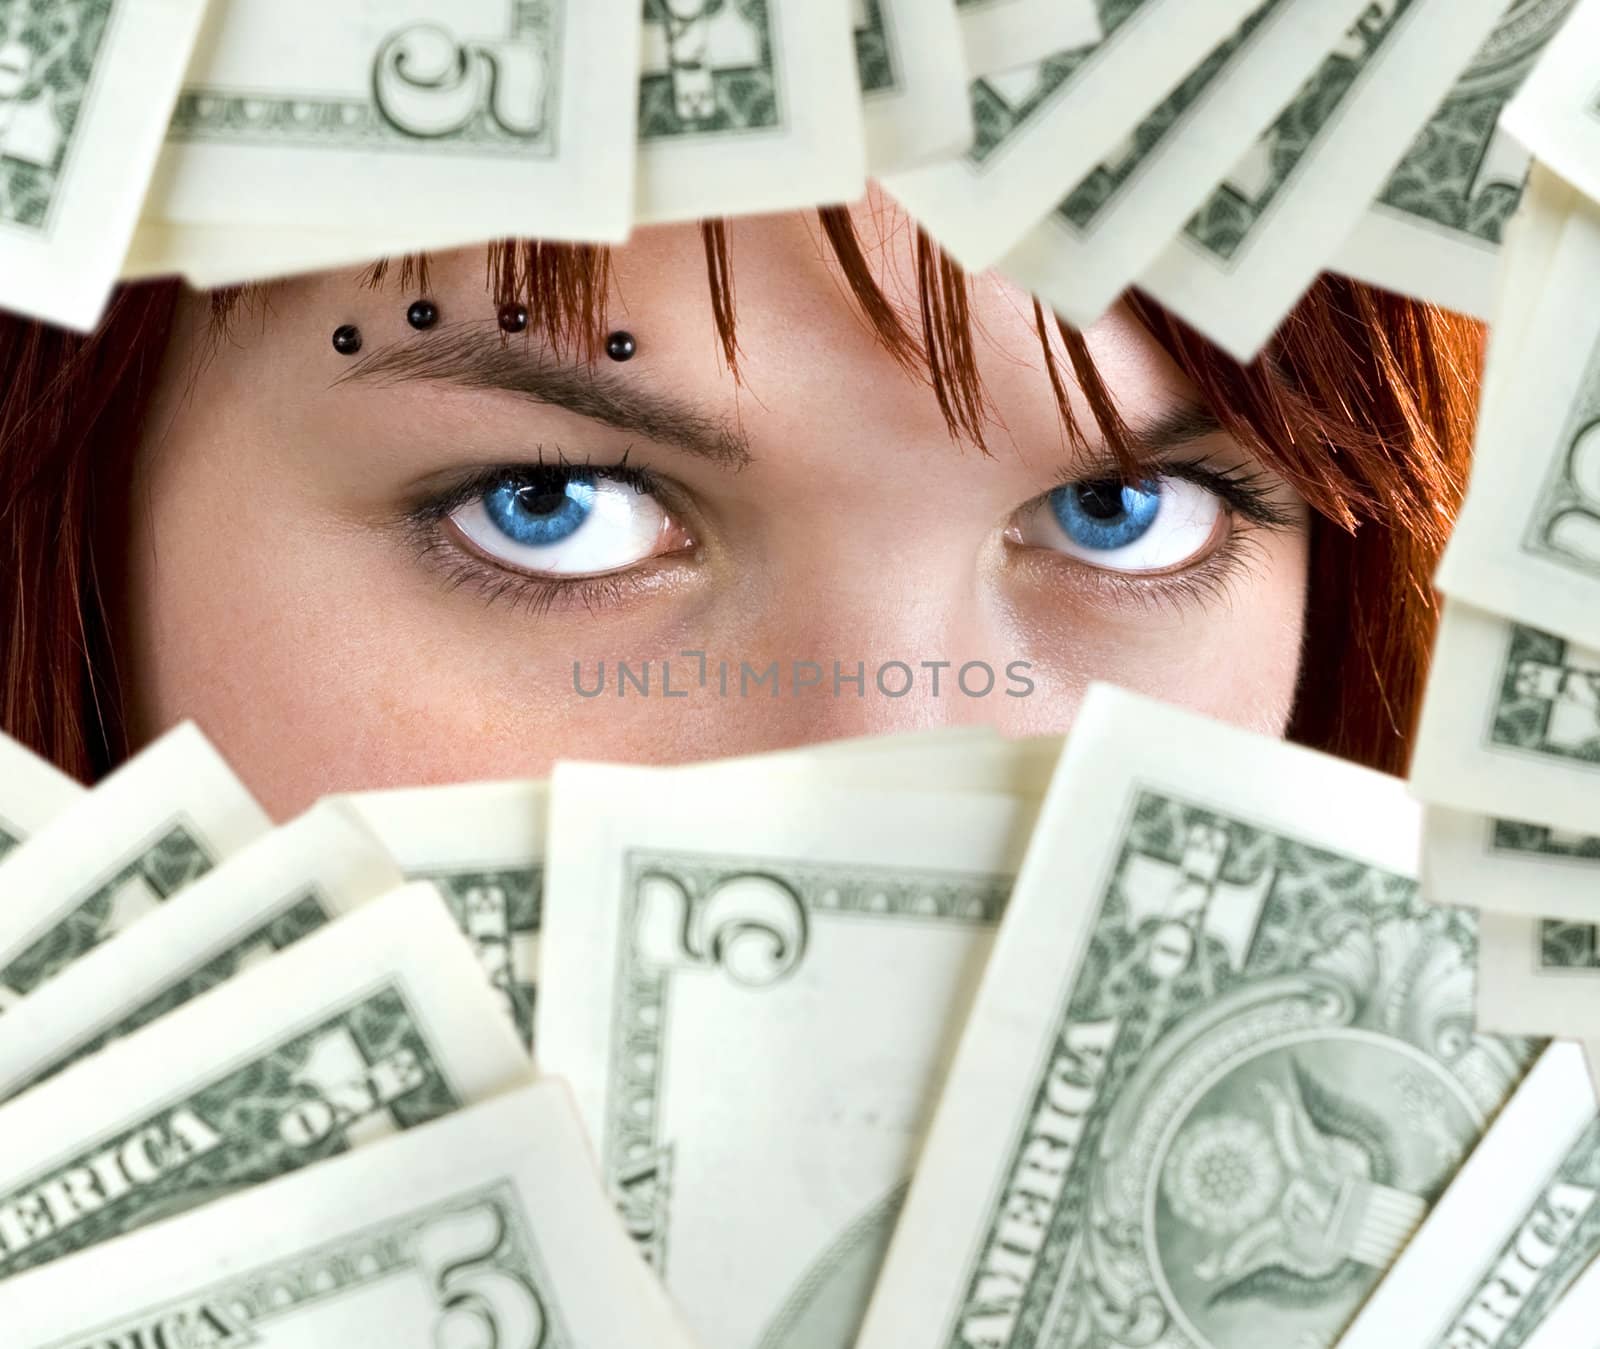 Piercing blue eyes of a cute redhead girl peeking through Dollar banknotes.